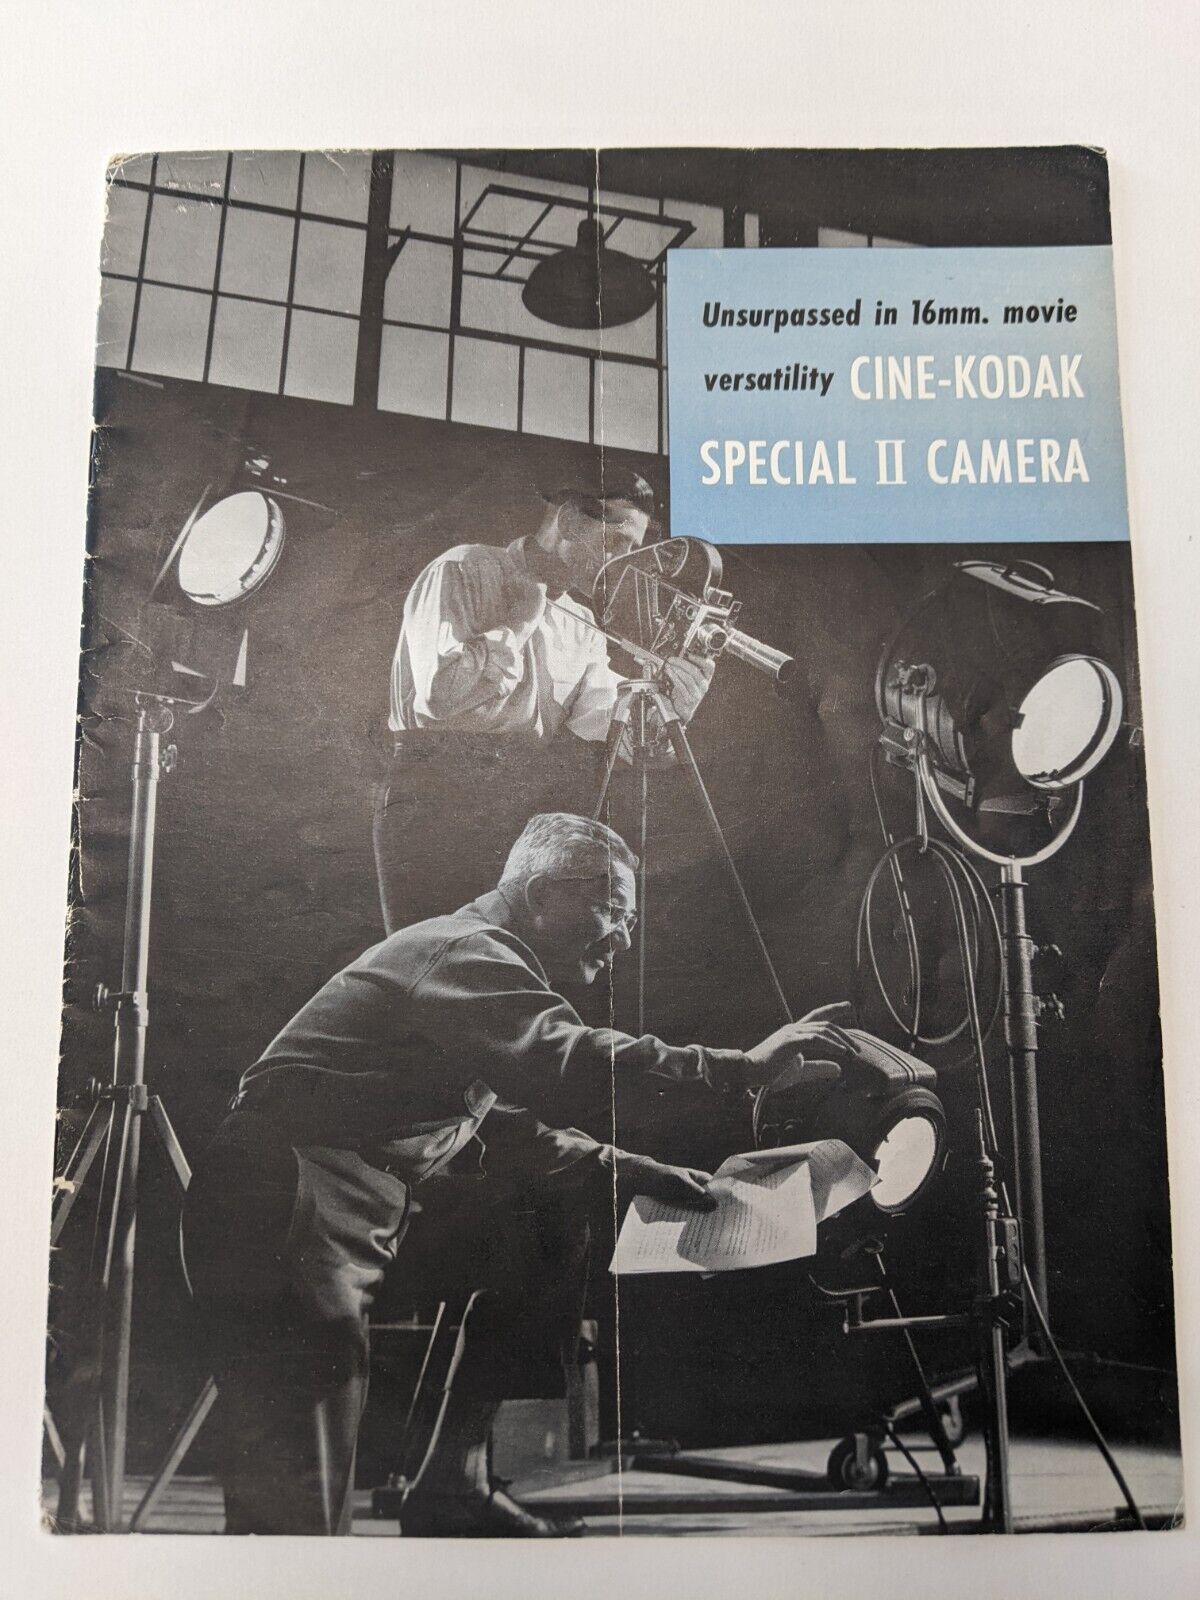 Vintage 1954 Cine-Kodak Special II Camera Unsurpassed in 16mm Movie Versatility